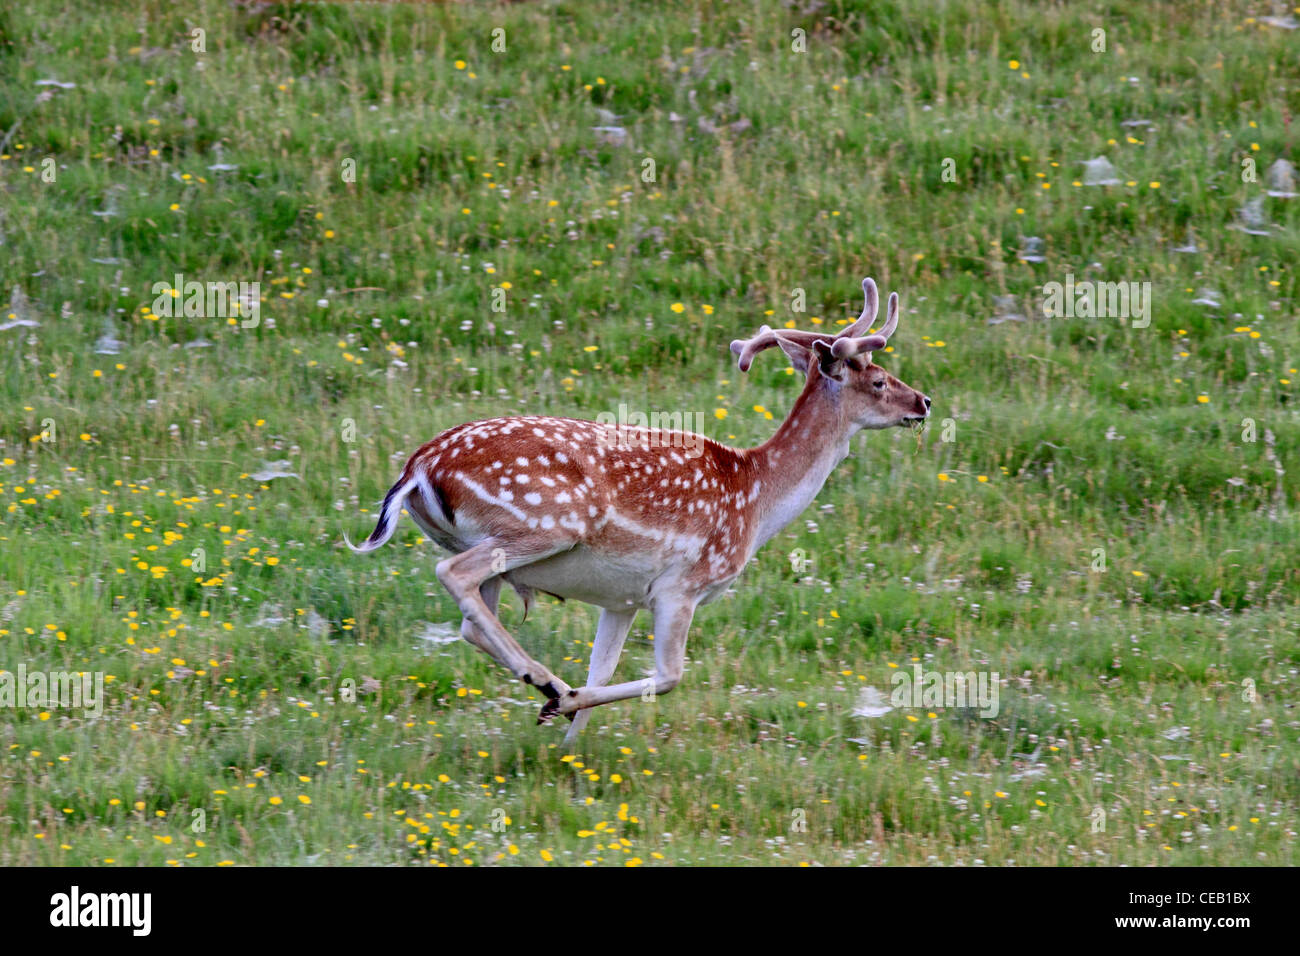 Young, Fallow Deer ( Dama dama ) running in meadow Stock Photo